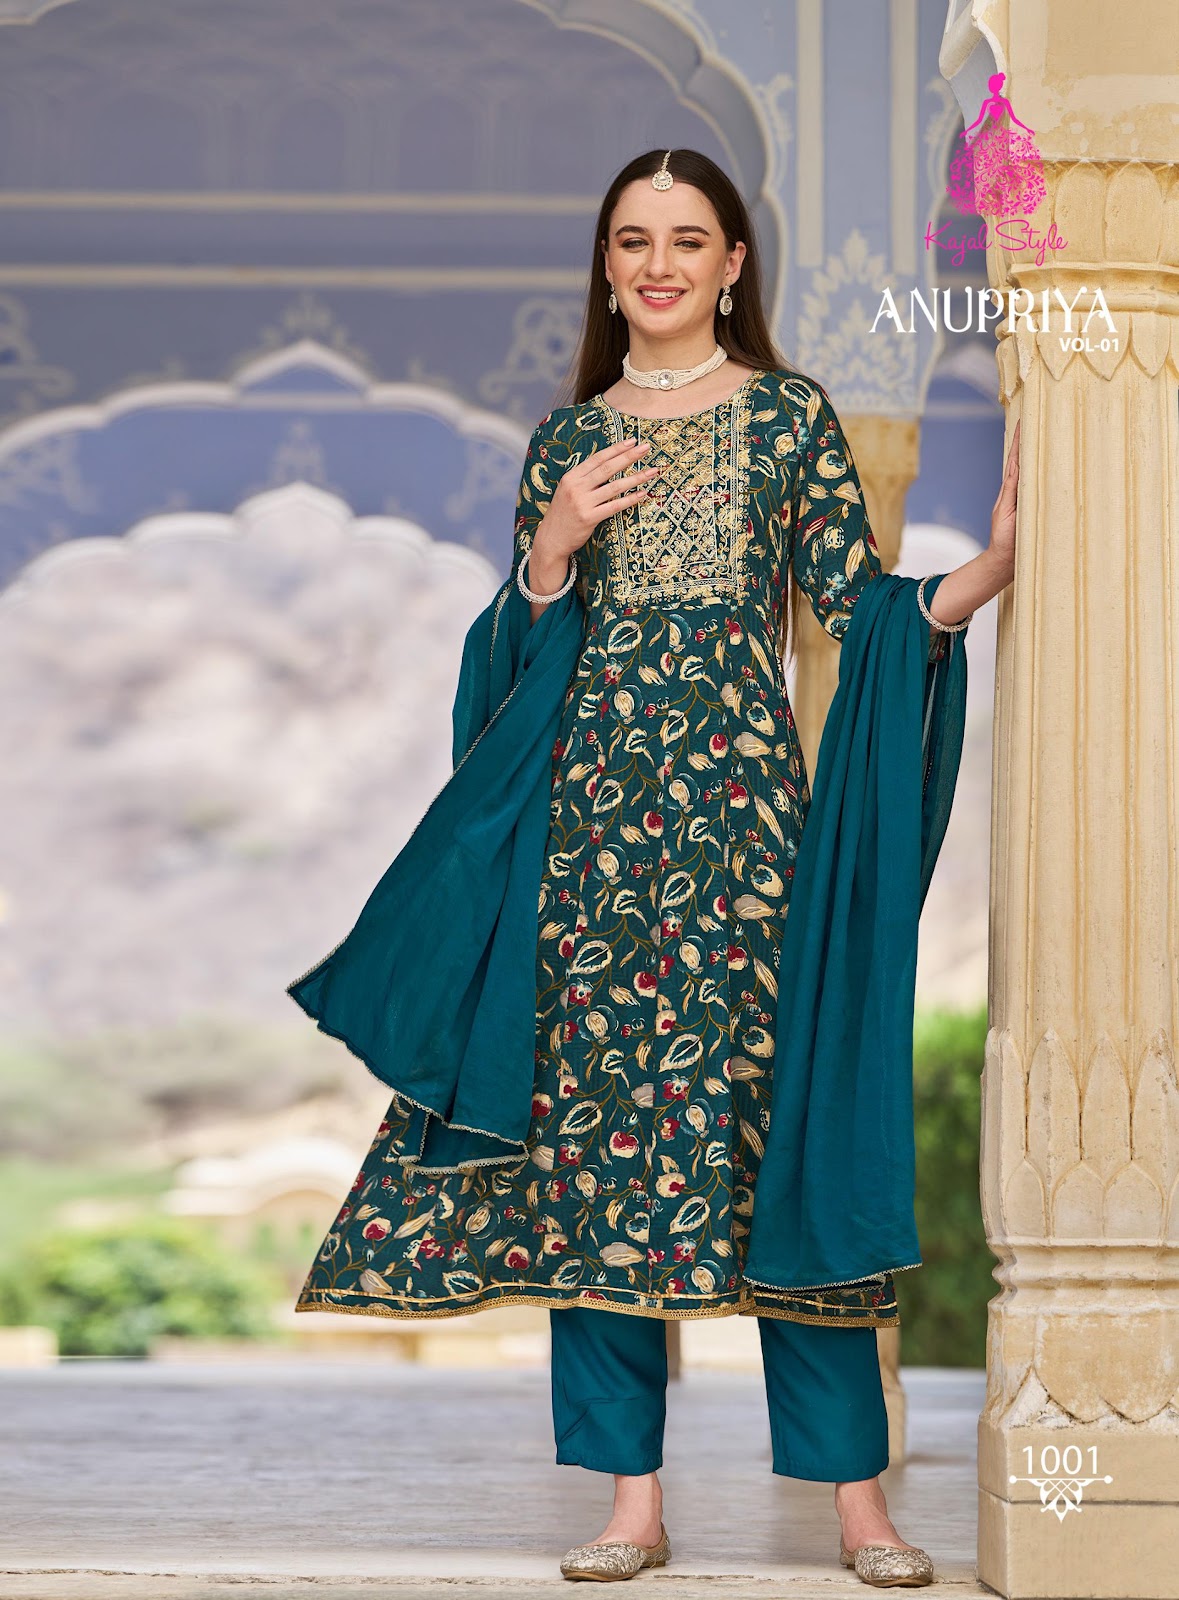 Anupriya Vol 1 Kajal Style Heavy Rayon Pant Style Suits Wholesaler